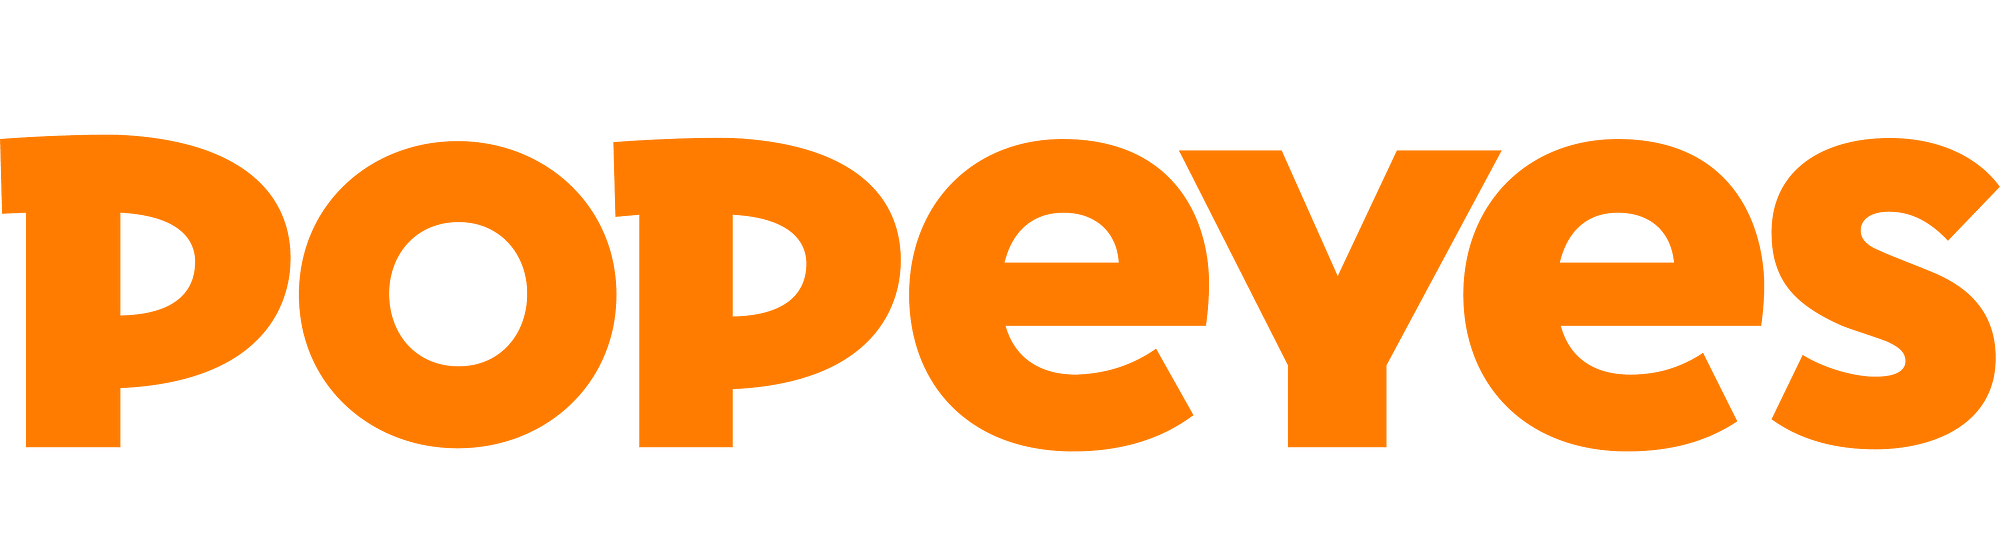 popeyes-logo